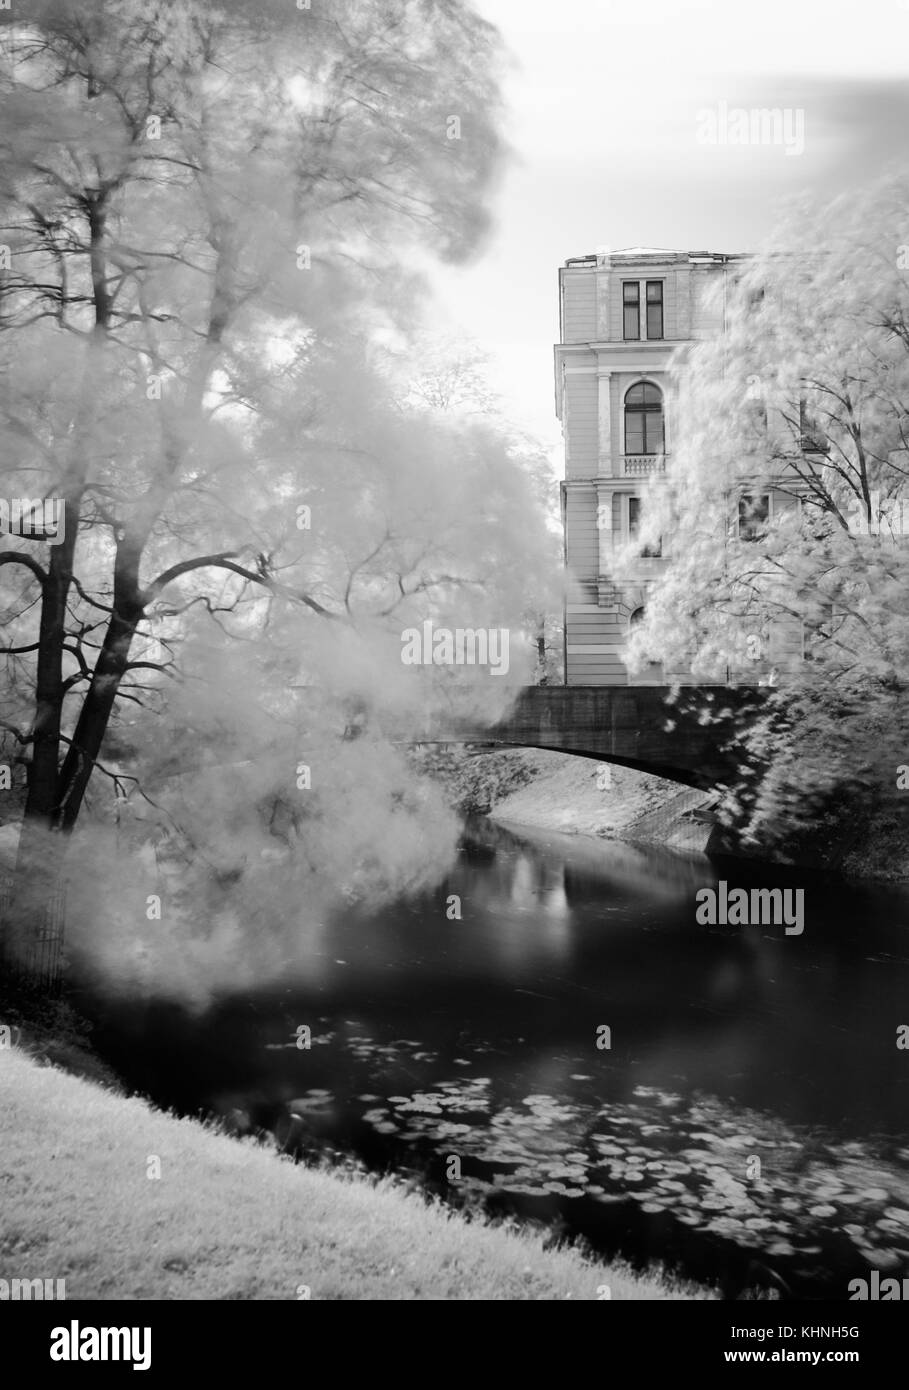 Un bianco e nero filtro IR la conversione di una scena in un parco con un ponte su un canale, alberi con movimento morbido nei rami e un vecchio edificio. Foto Stock